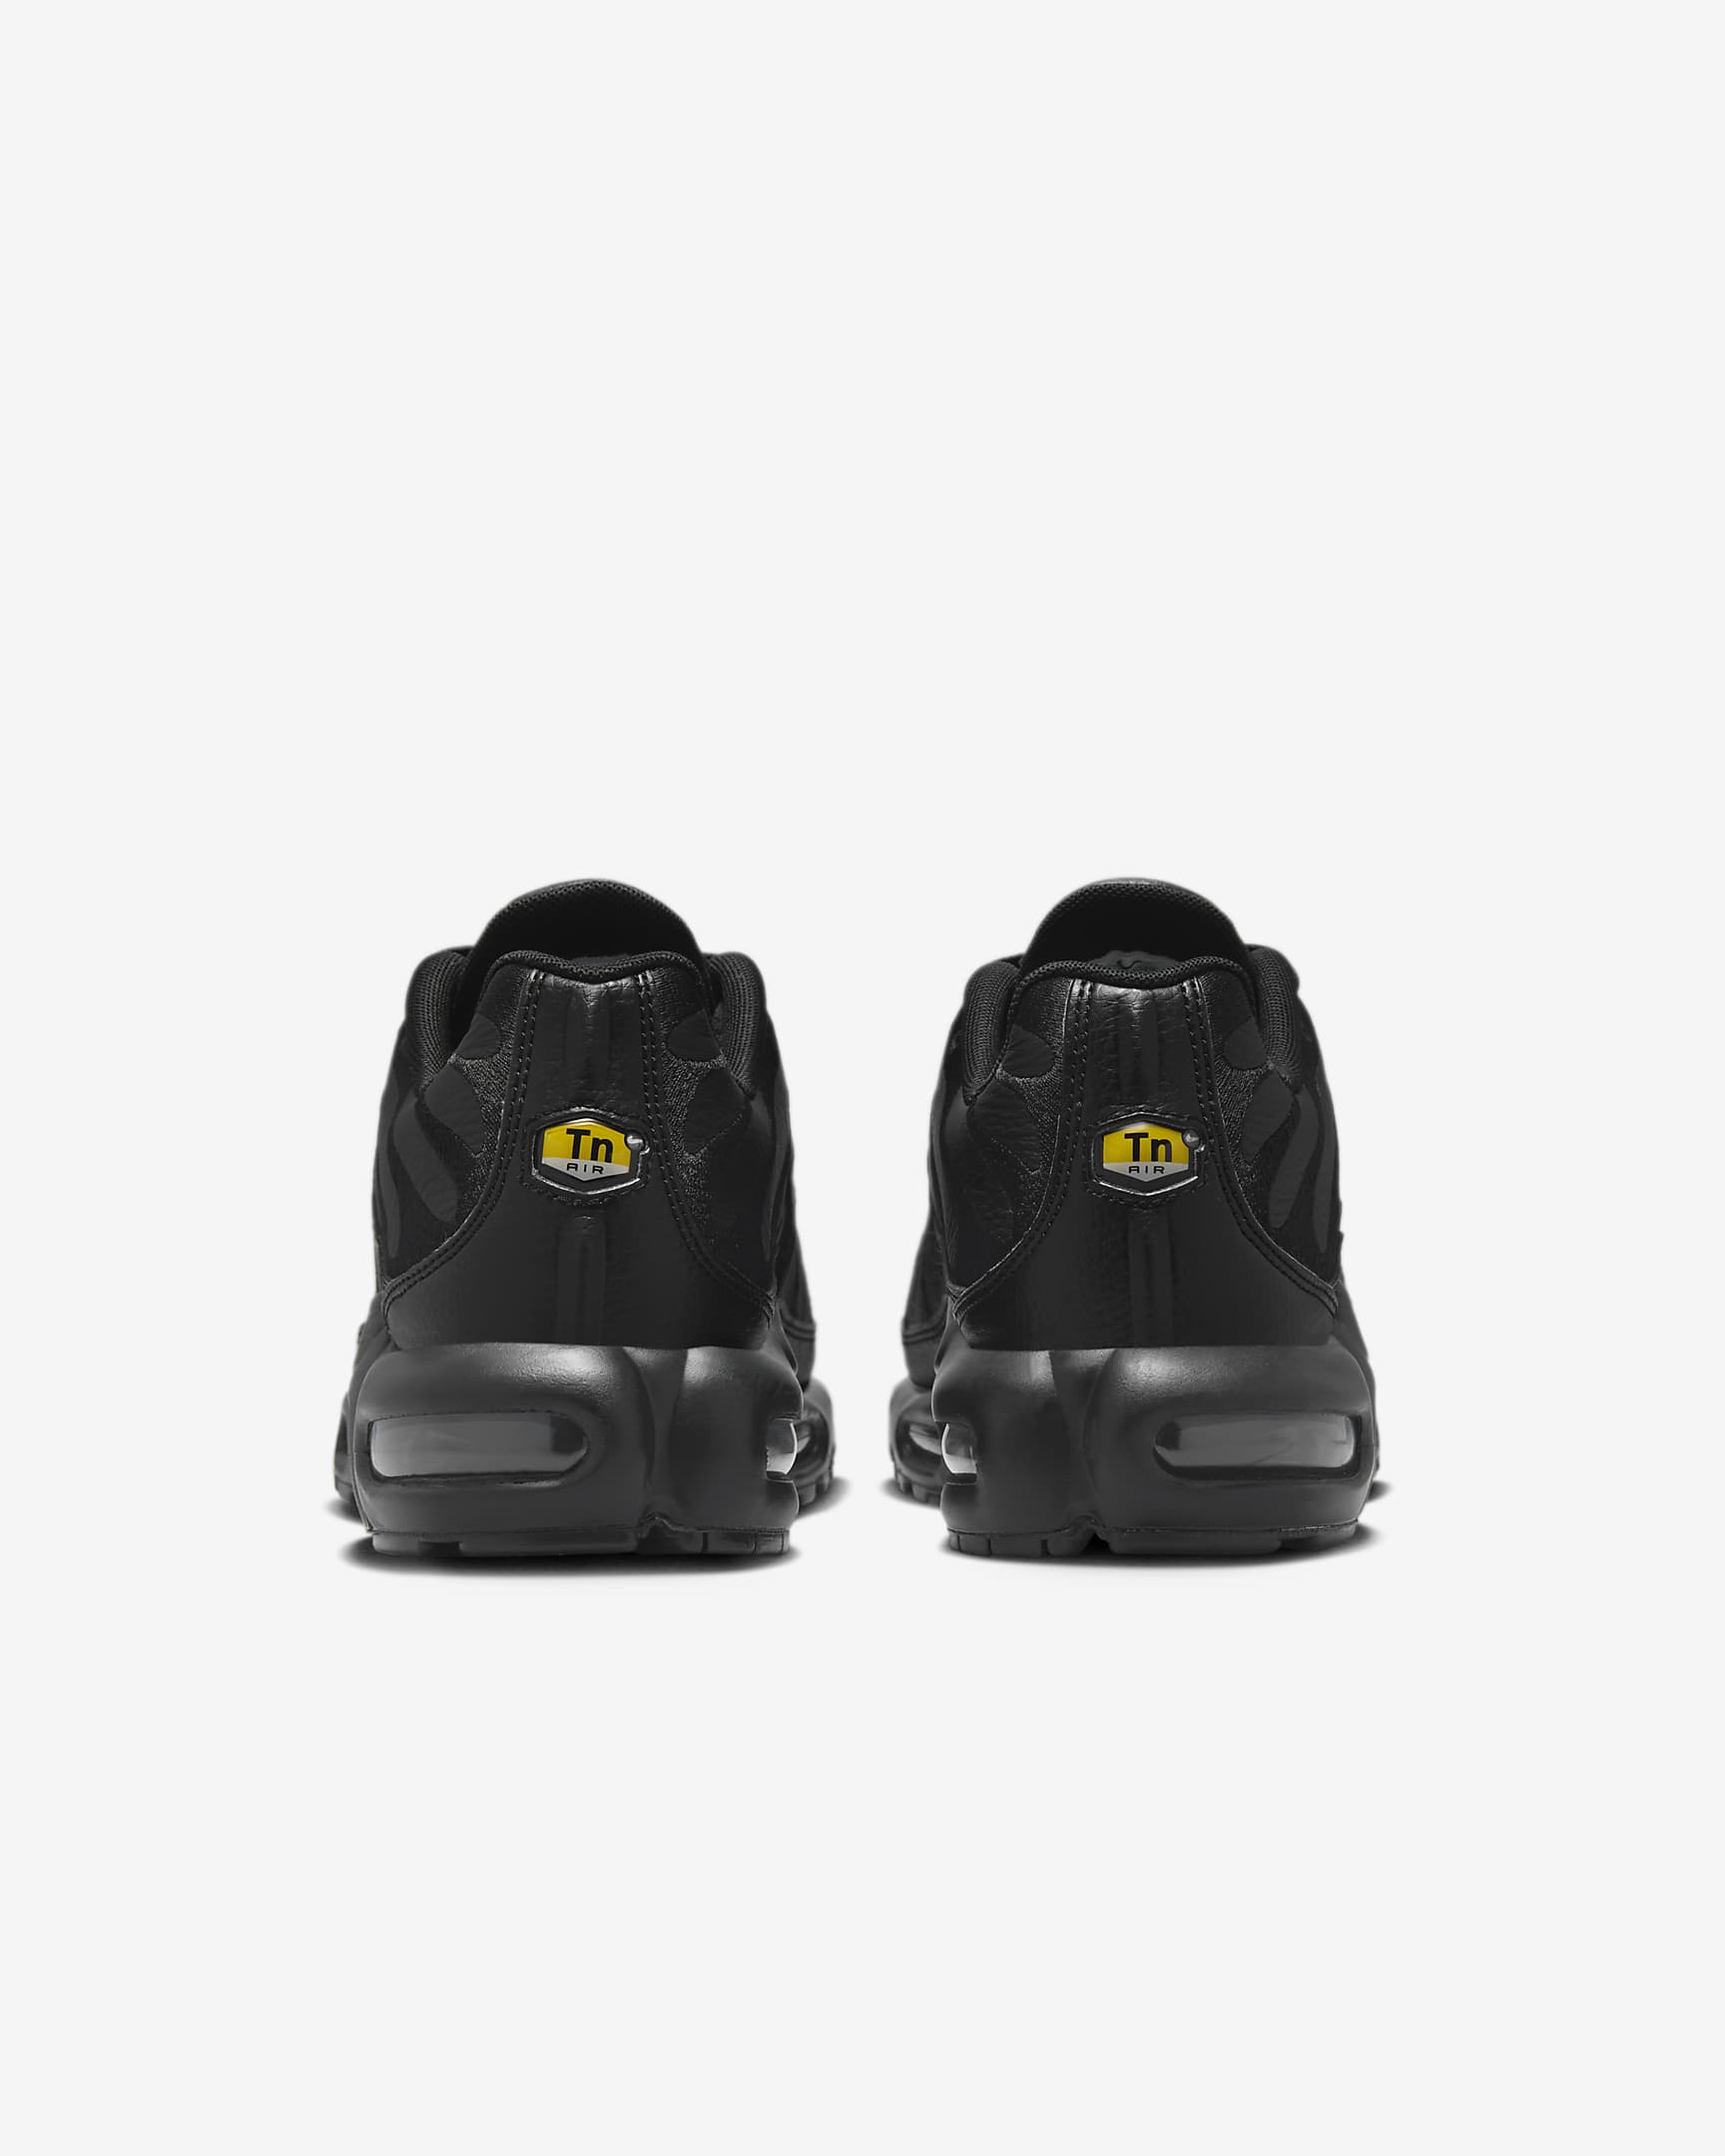 Nike Air Max Plus Men's Shoe - Black/Black/Black